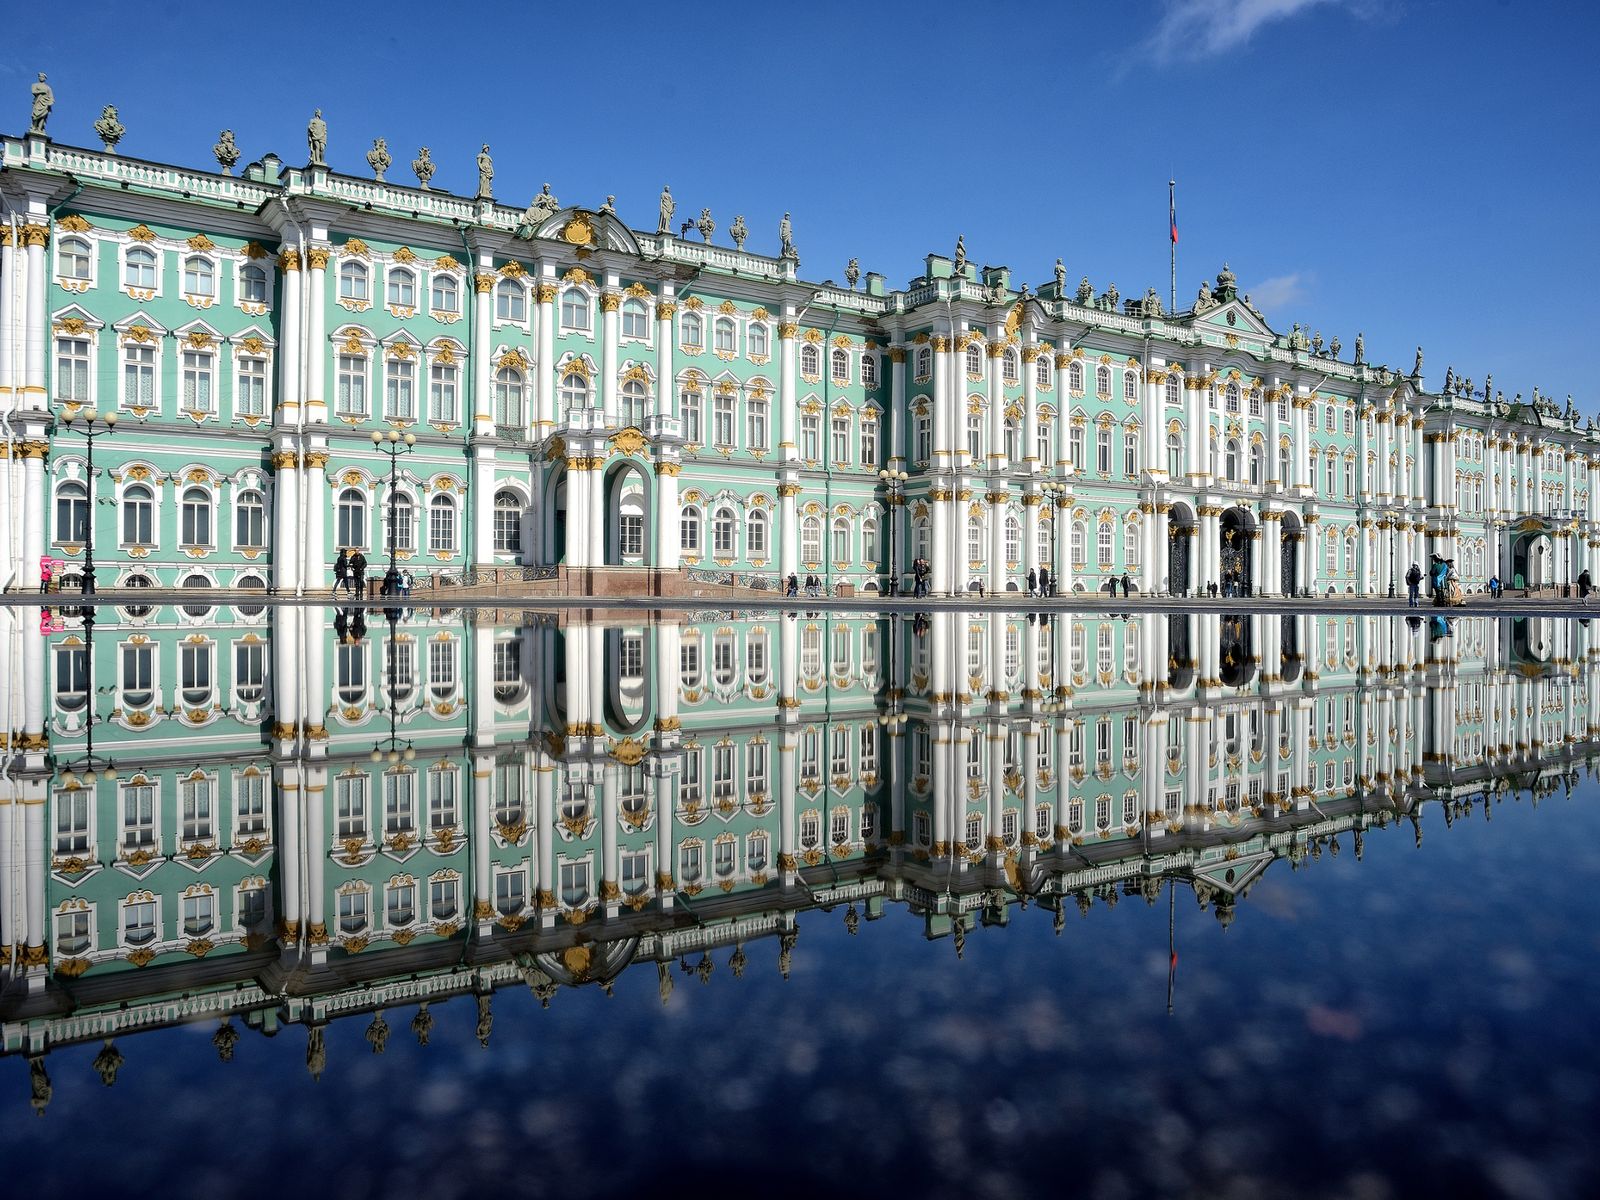 Зимний дворец, Санкт-Петербург